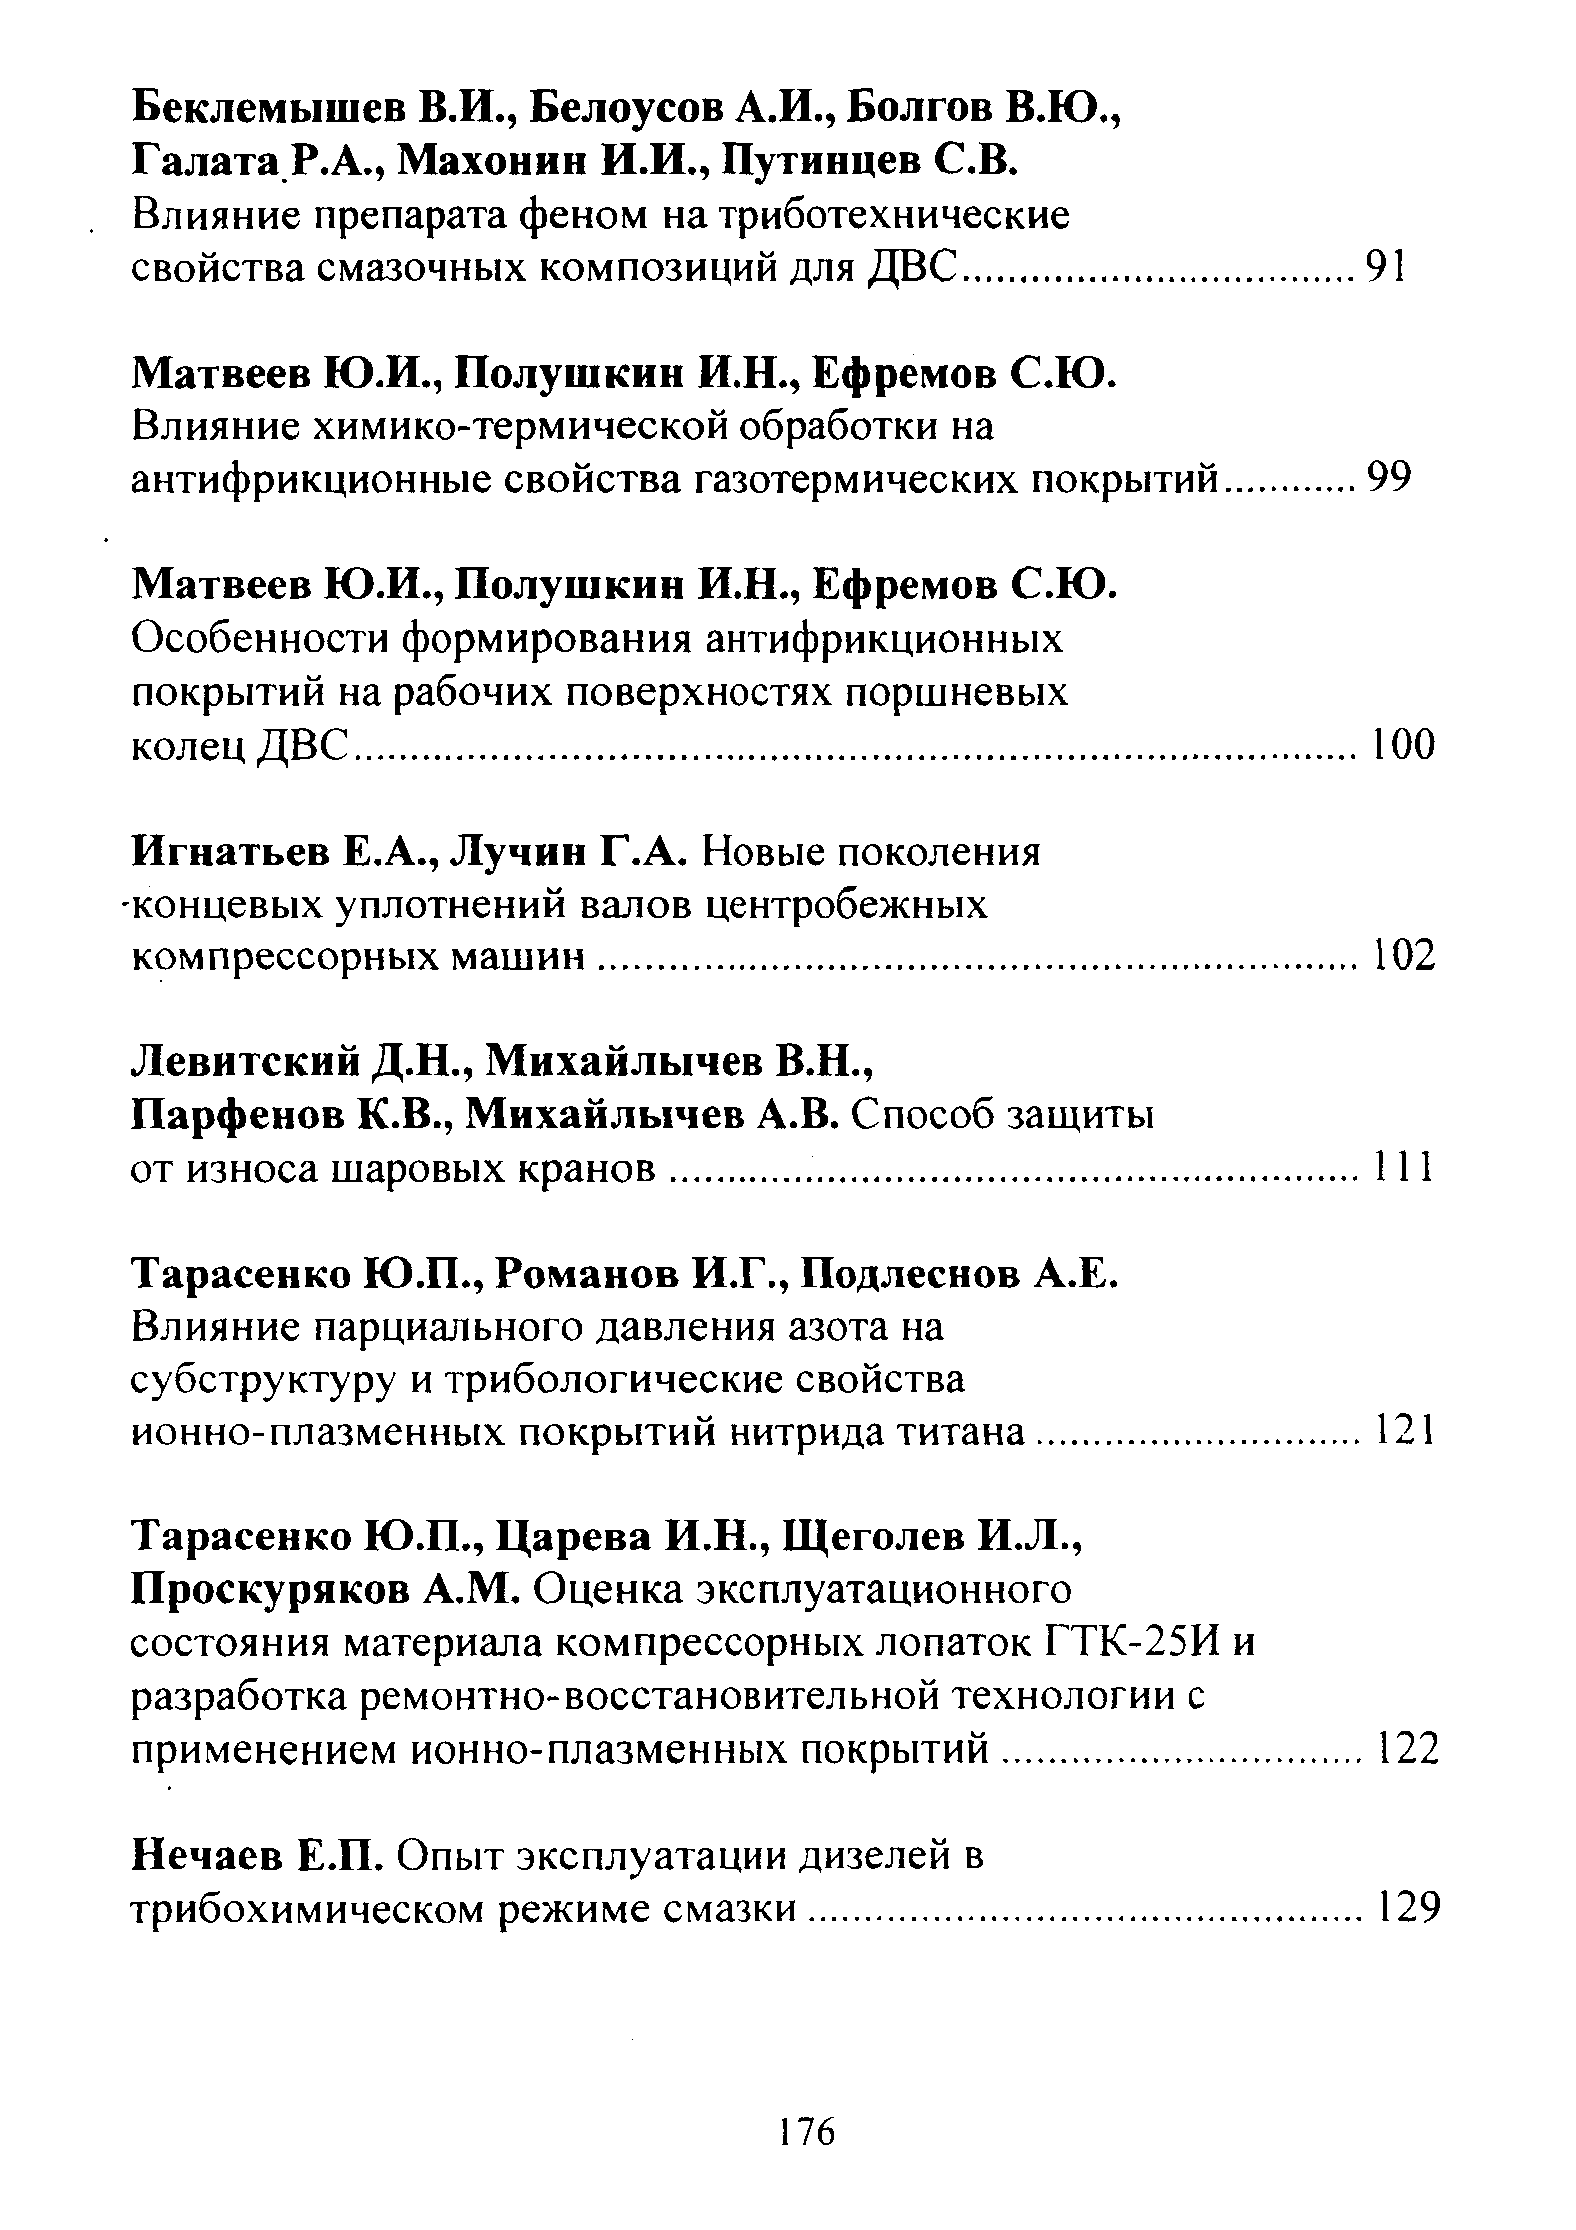 Матвеев Ю.И., Полушкин И.Н., Ефремов С.Ю.
